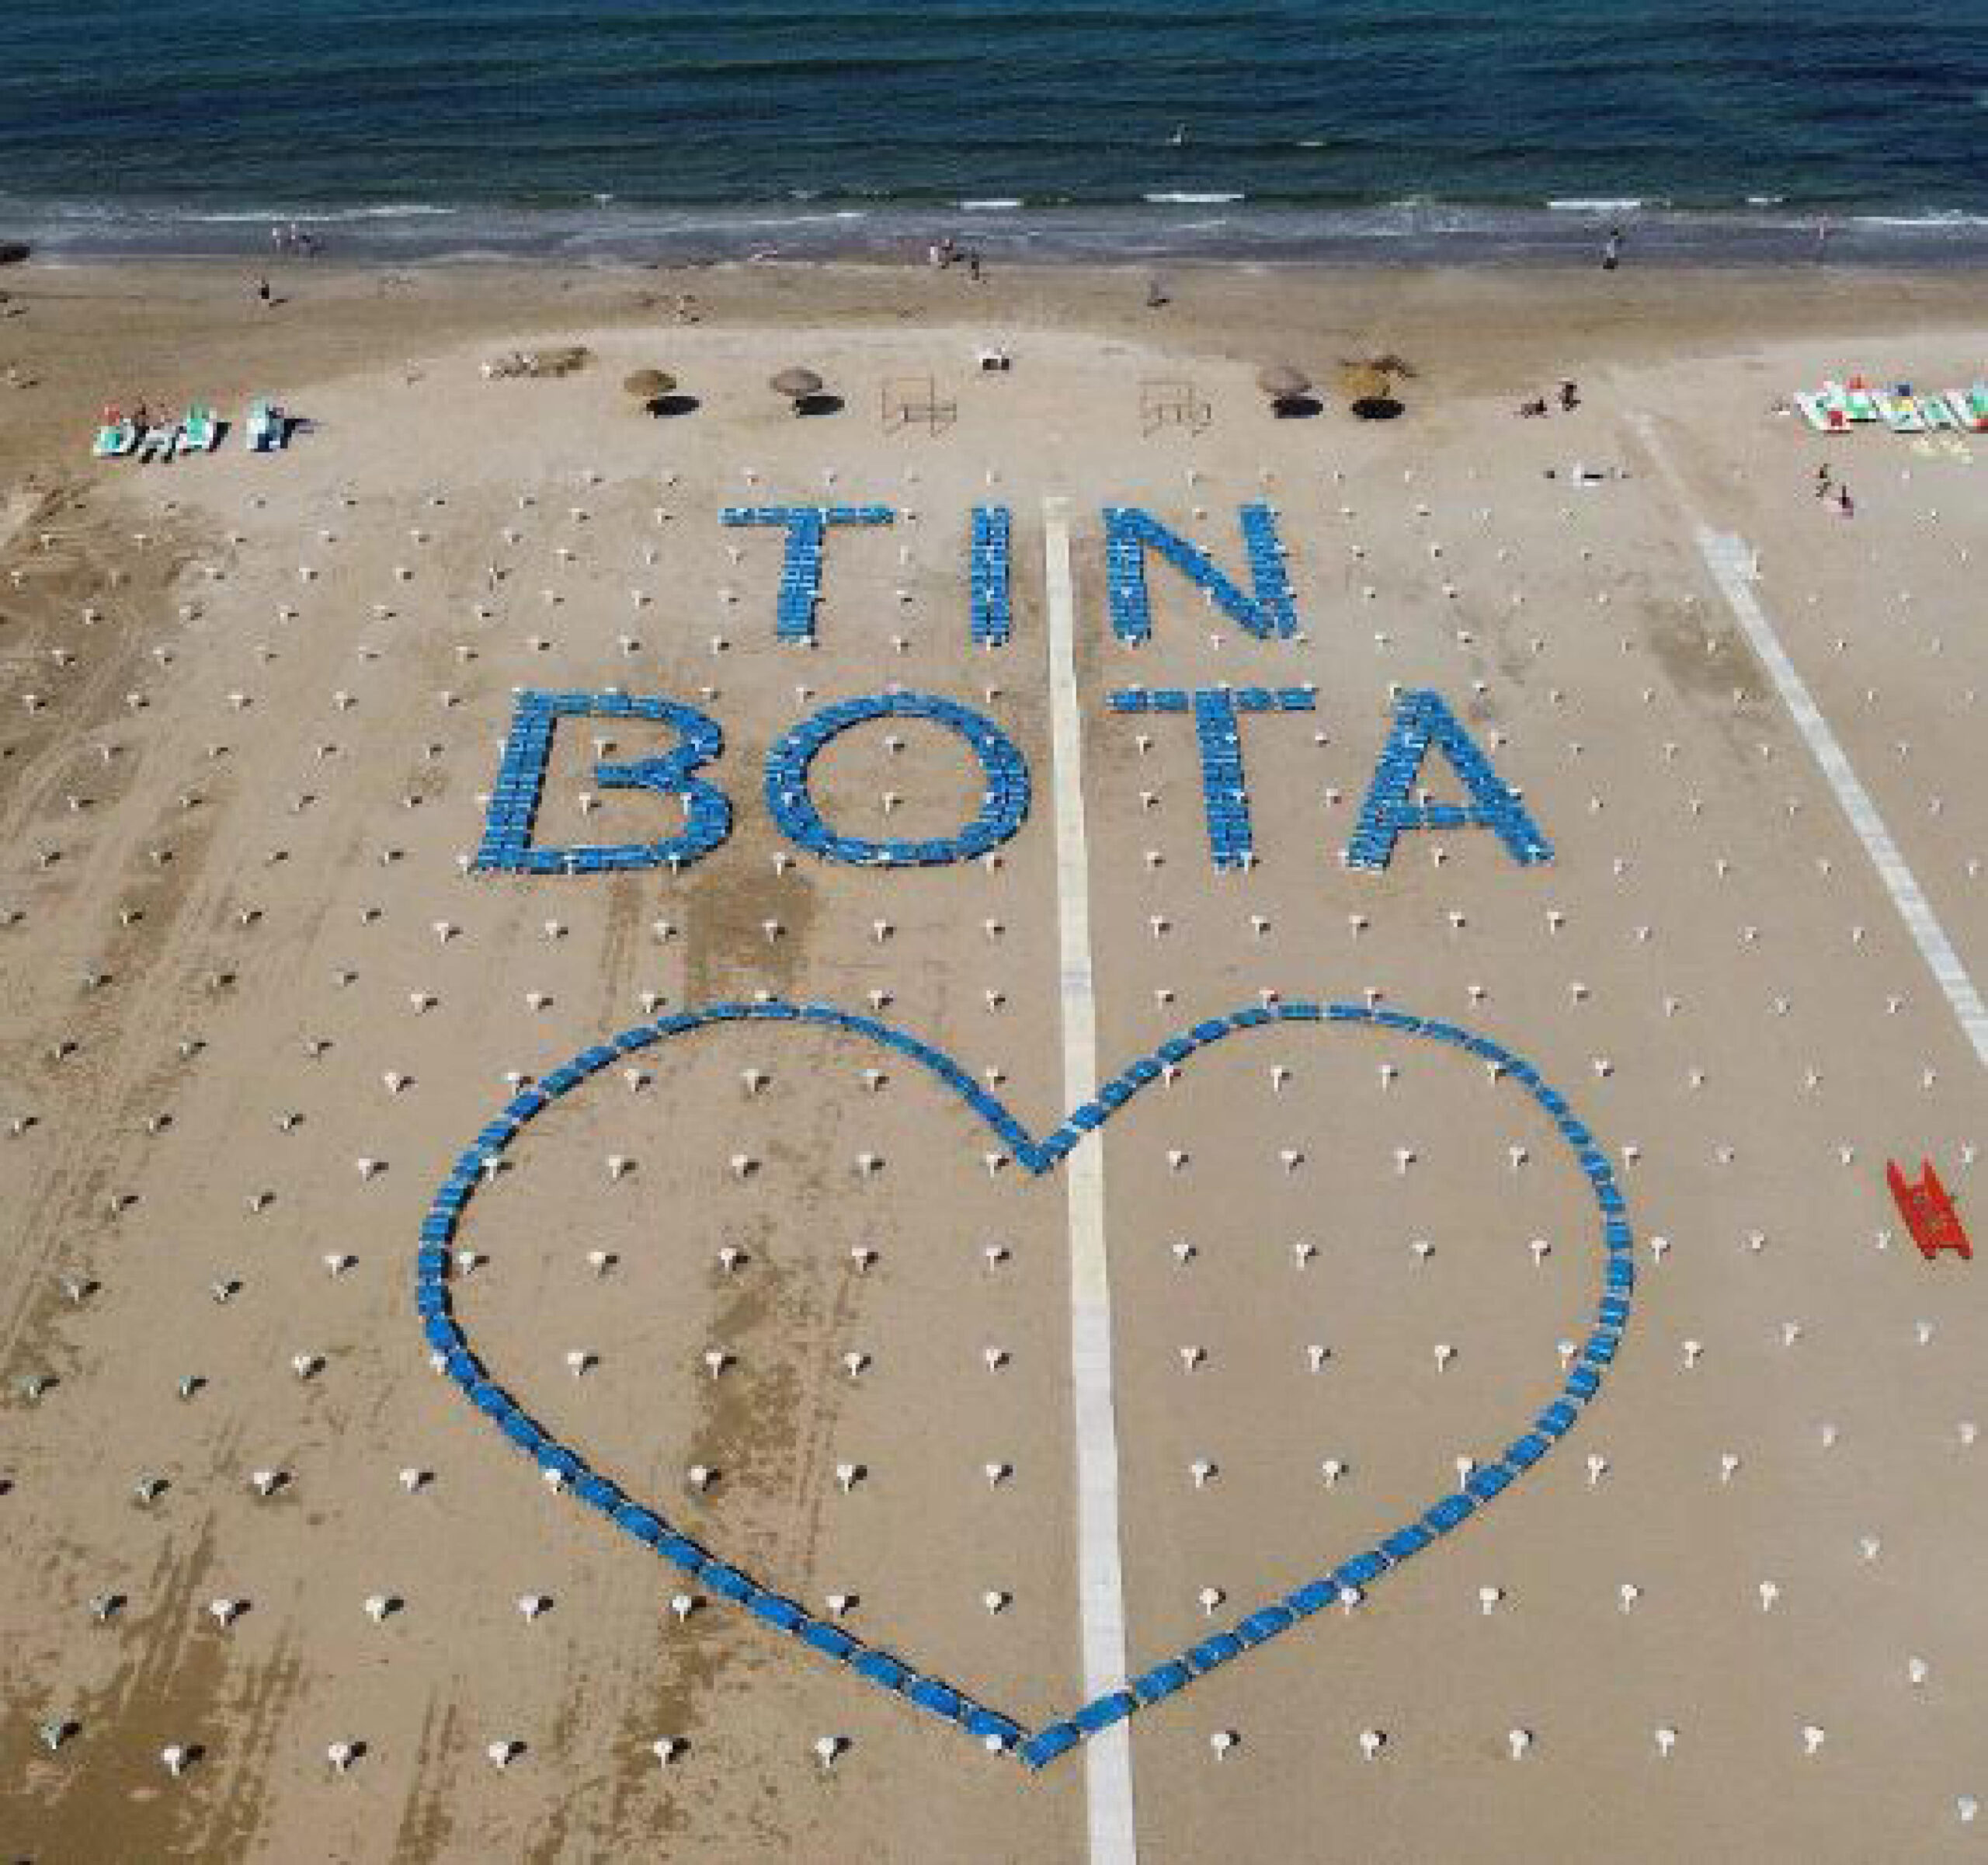 Il 'Tin bota' sulla spiaggia realizzata con la posa di circa 400 lettini, Rimini, 21 maggio 2023. FACEBOOK SPIAGGIA 12 RIMINI +++ ATTENZIONE LA FOTO NON PUO' ESSERE PUBBLICATA O RIPRODOTTA SENZA L'AUTORIZZAZIONE DELLA FONTE DI ORIGINE CUI SI RINVIA +++ NPK +++